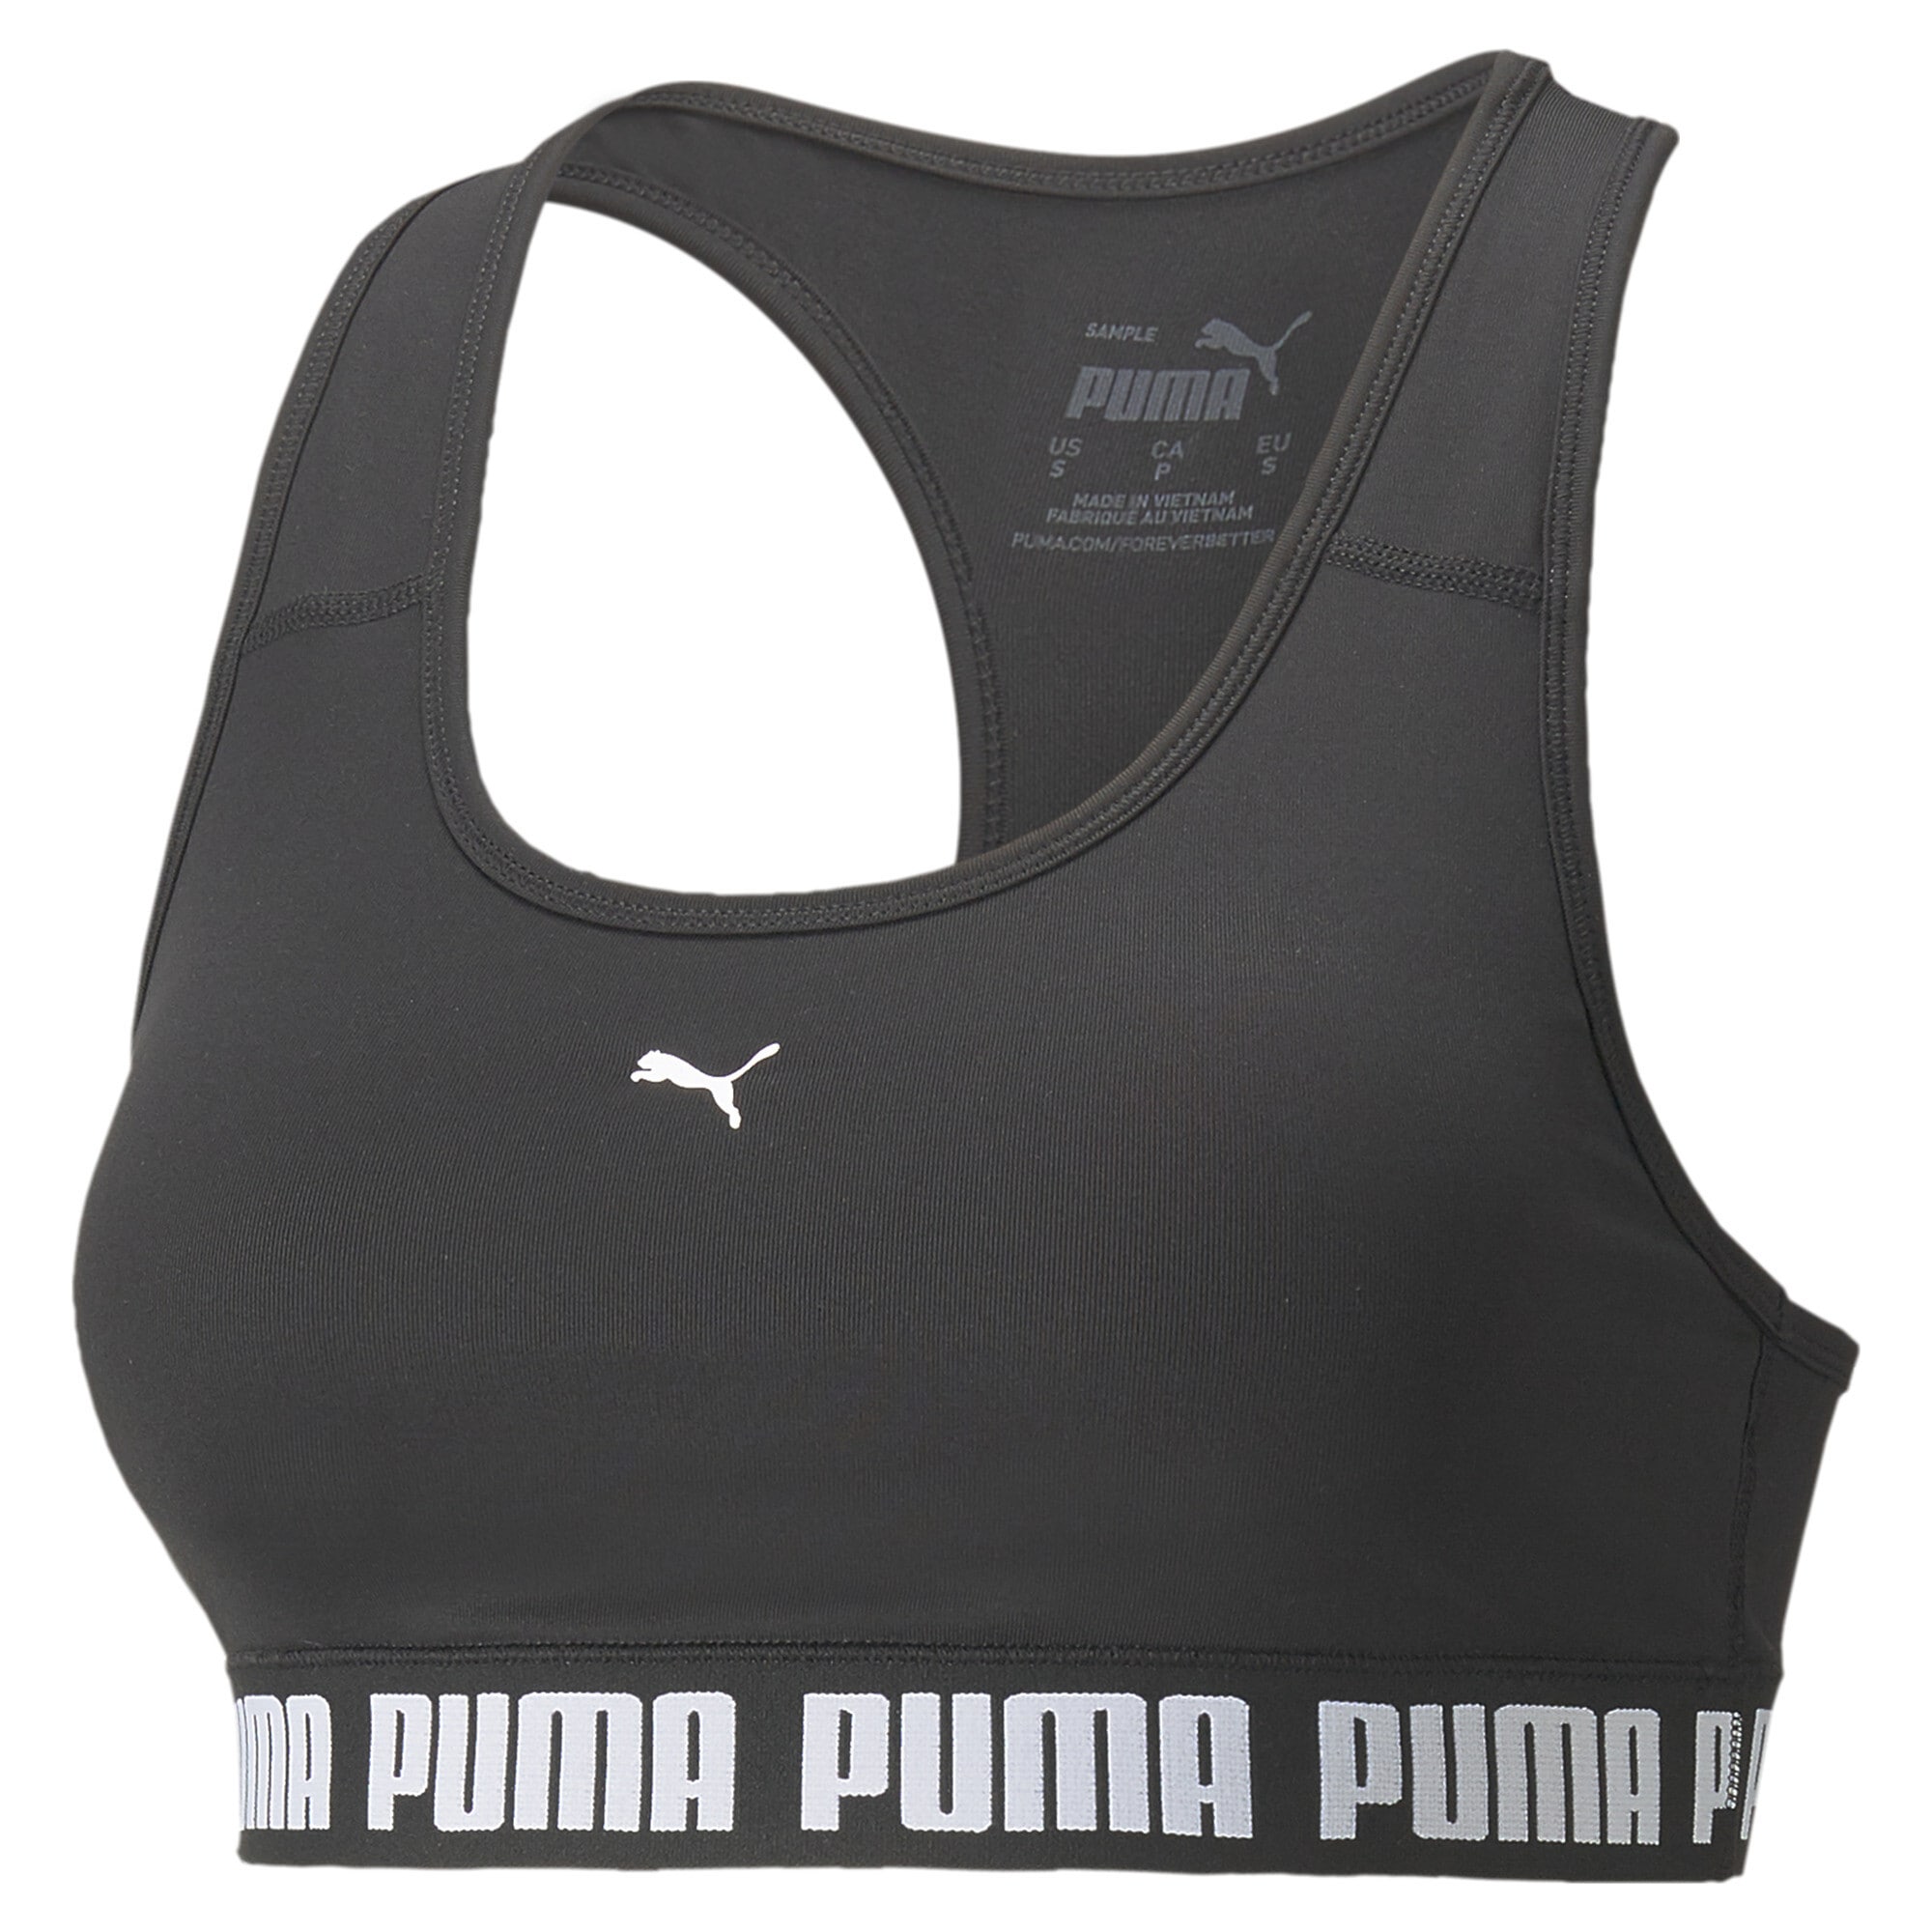 & Wäsche Trainings-BH »STRONG Damen« bestellen PUMA Sport-BH auf Rechnung